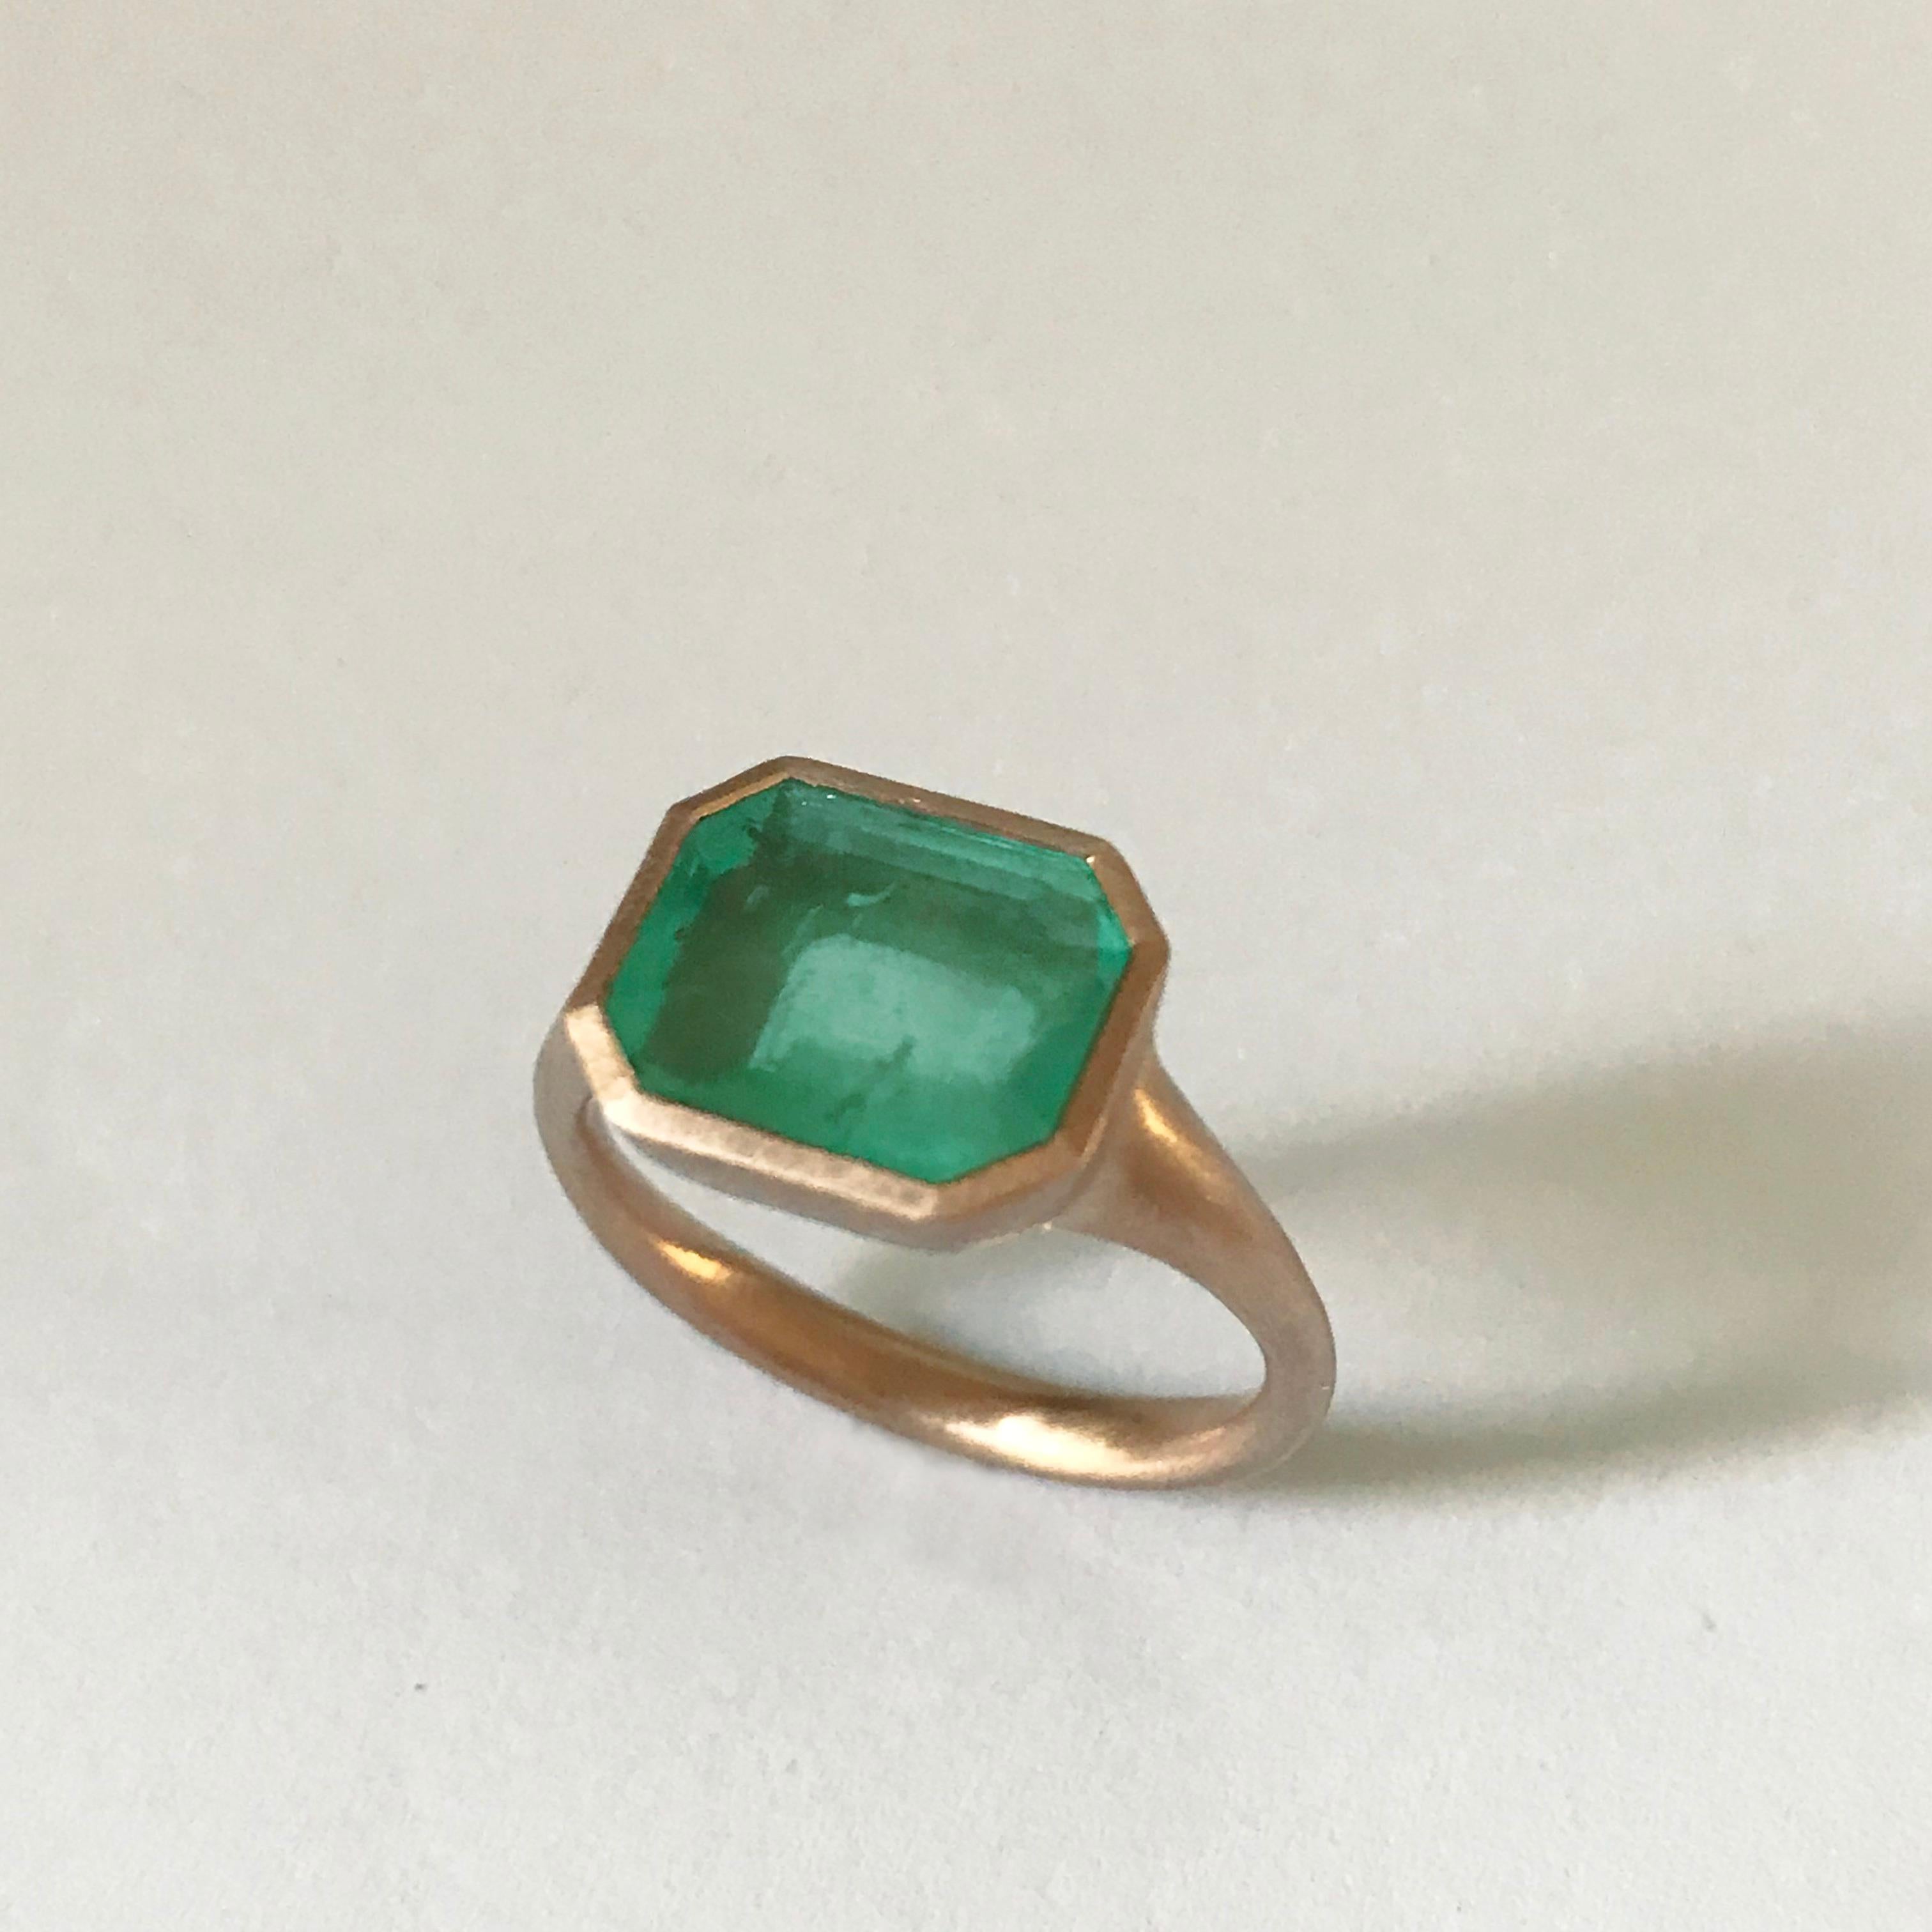 Dalben 4, 10 Carat Emerald Rose Gold Ring 2